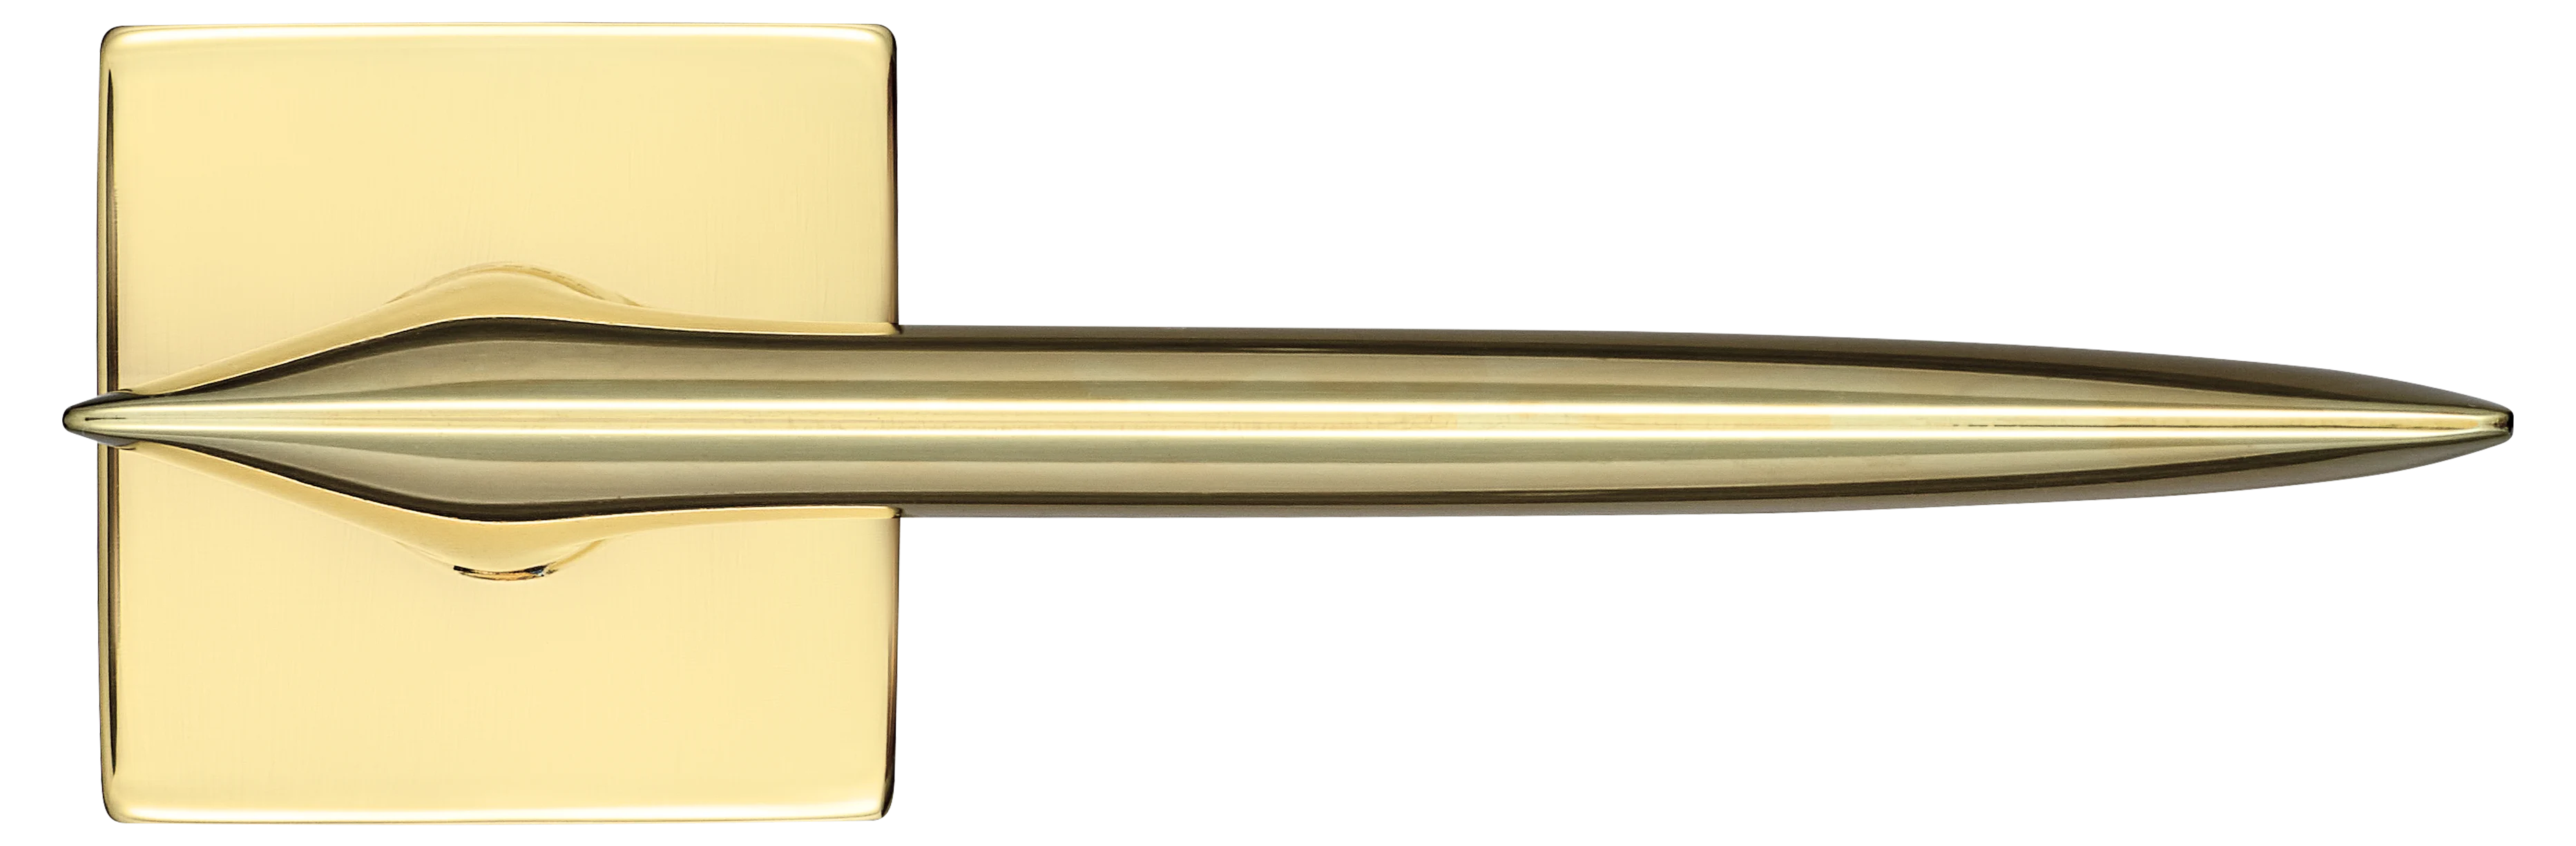 GALACTIC S5 OTL, ручка дверная, цвет -  золото фото купить в Чебоксарах